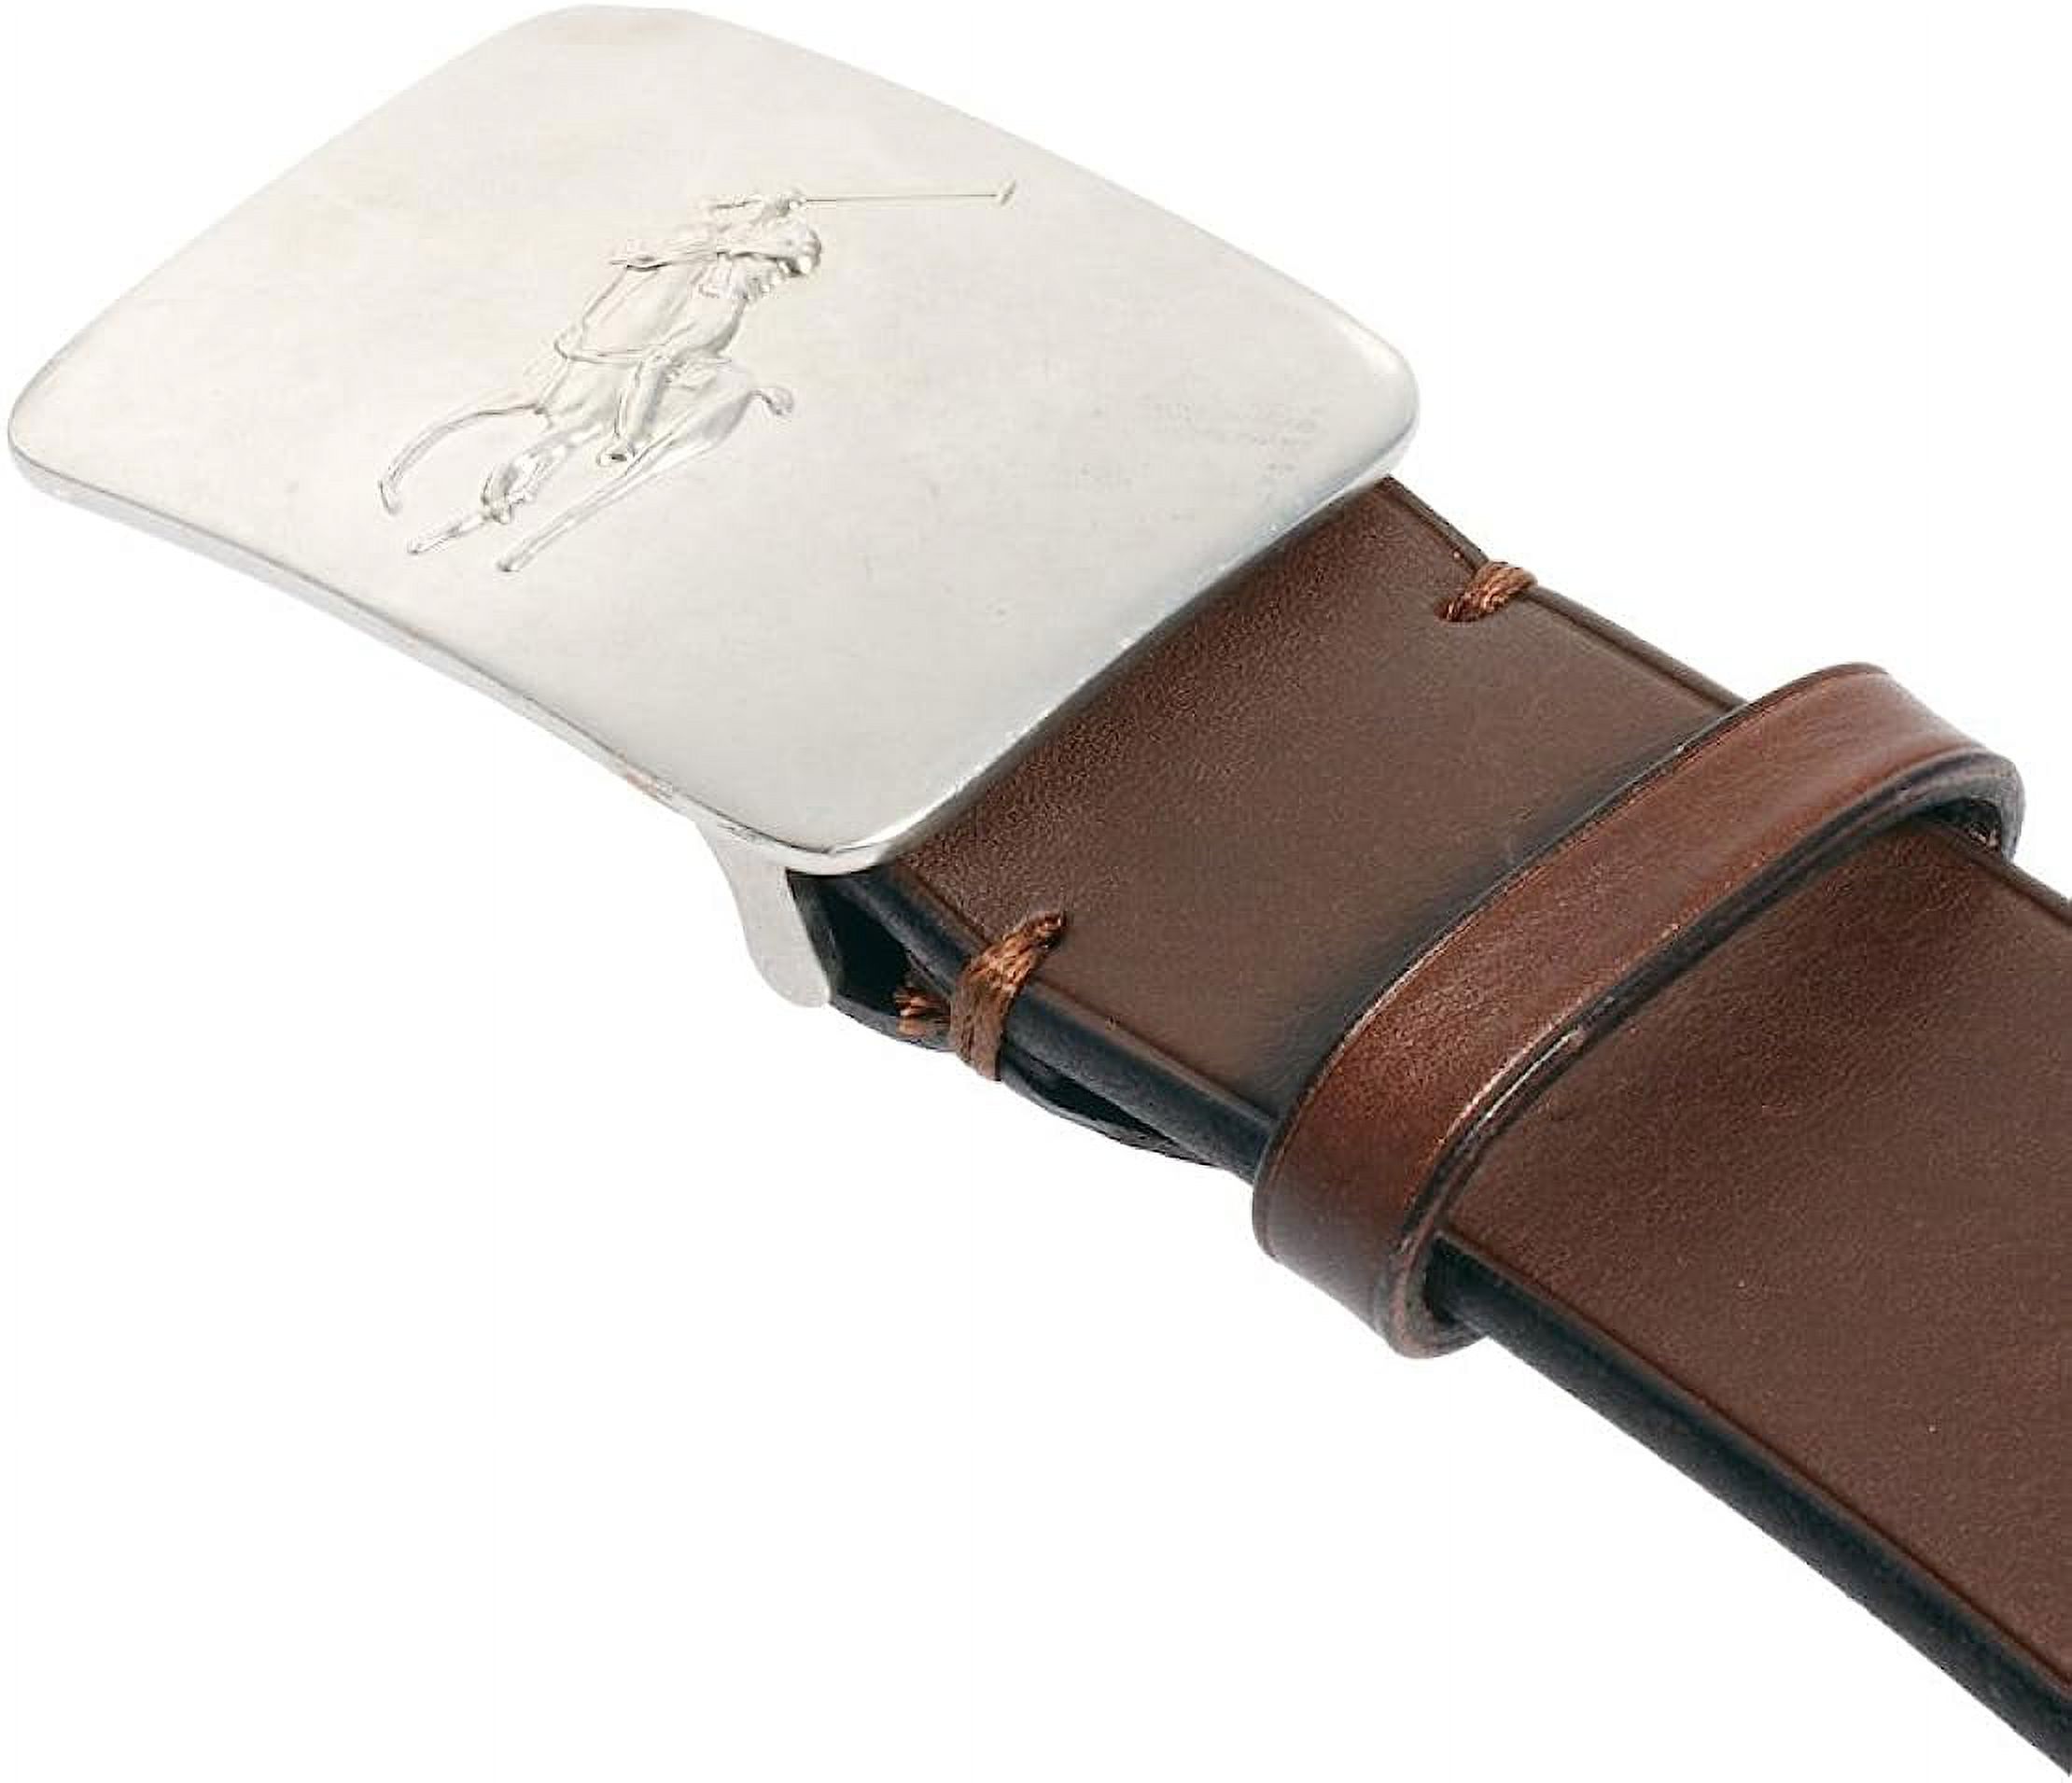 New  Polo Ralph Lauren Men's Big Pony Logo Plaque Leather Belt, Brown, Sz 36 (8639-7) - image 3 of 3